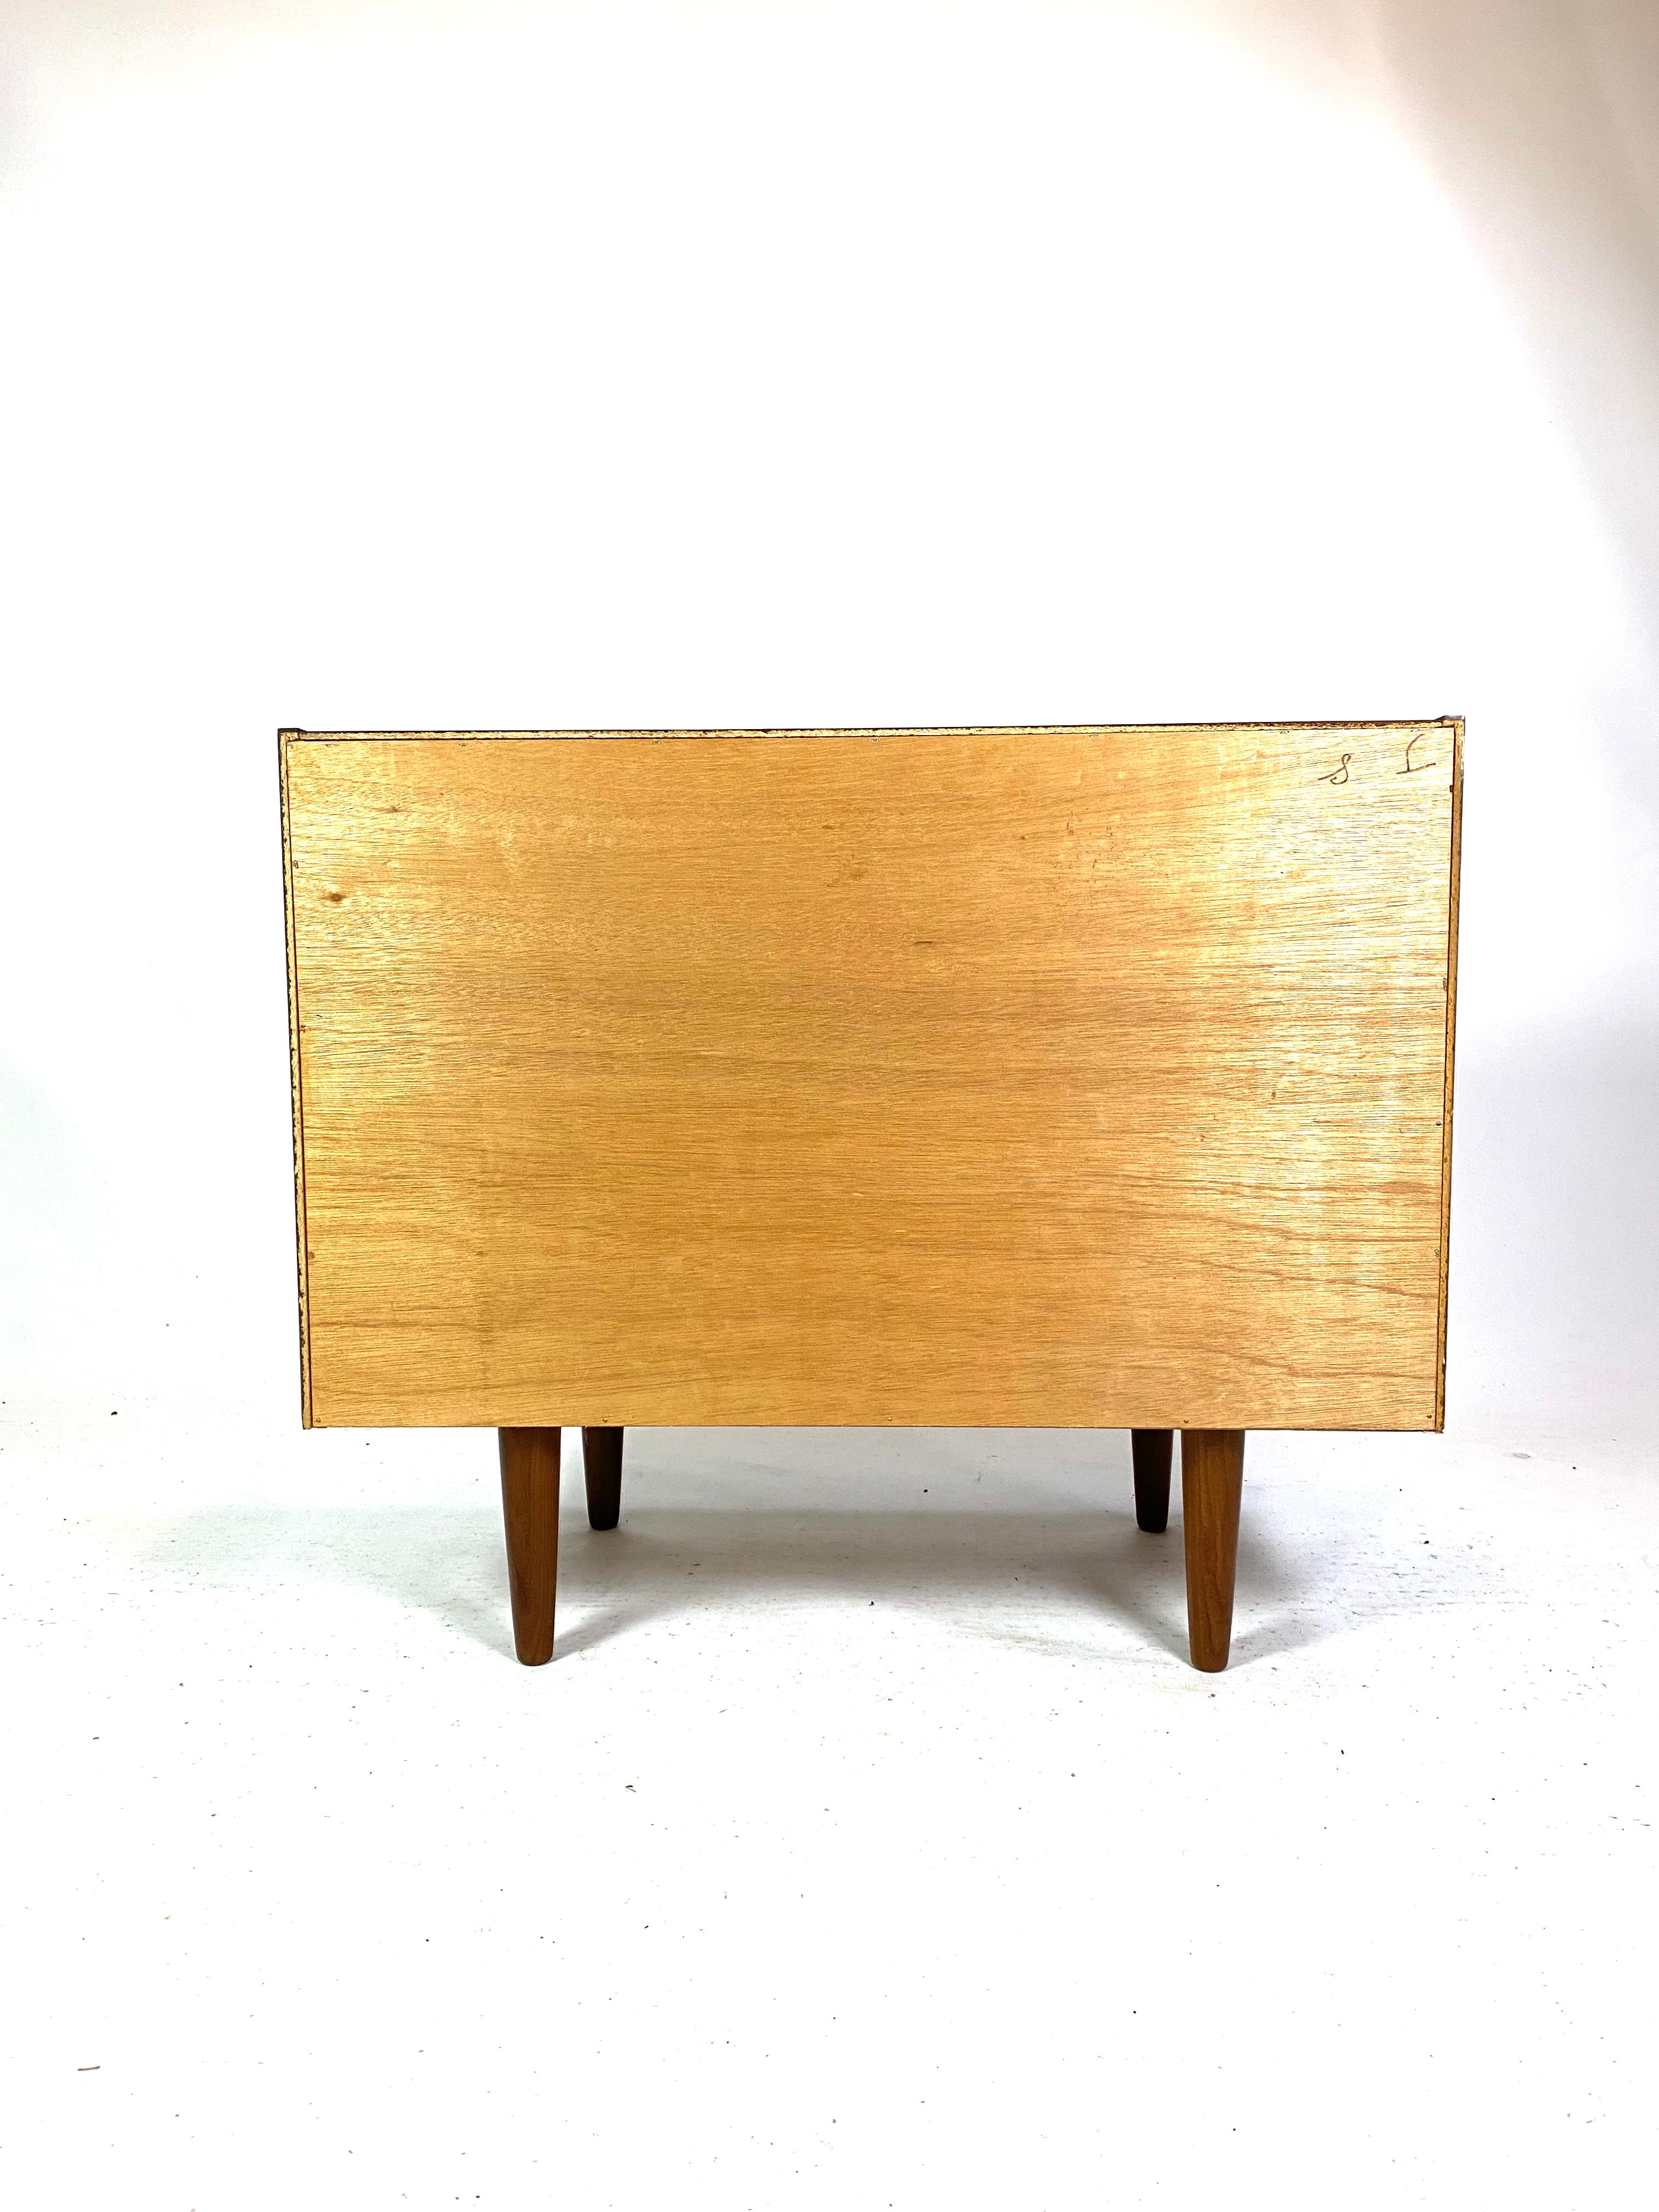 Holen Sie sich ein Stück Möbelgeschichte mit dieser eleganten Palisander-Kommode aus den 1960er Jahren. Das Palisanderholz verleiht der Kommode einen warmen und natürlichen Glanz und unterstreicht gleichzeitig die feine Handwerkskunst, die für das